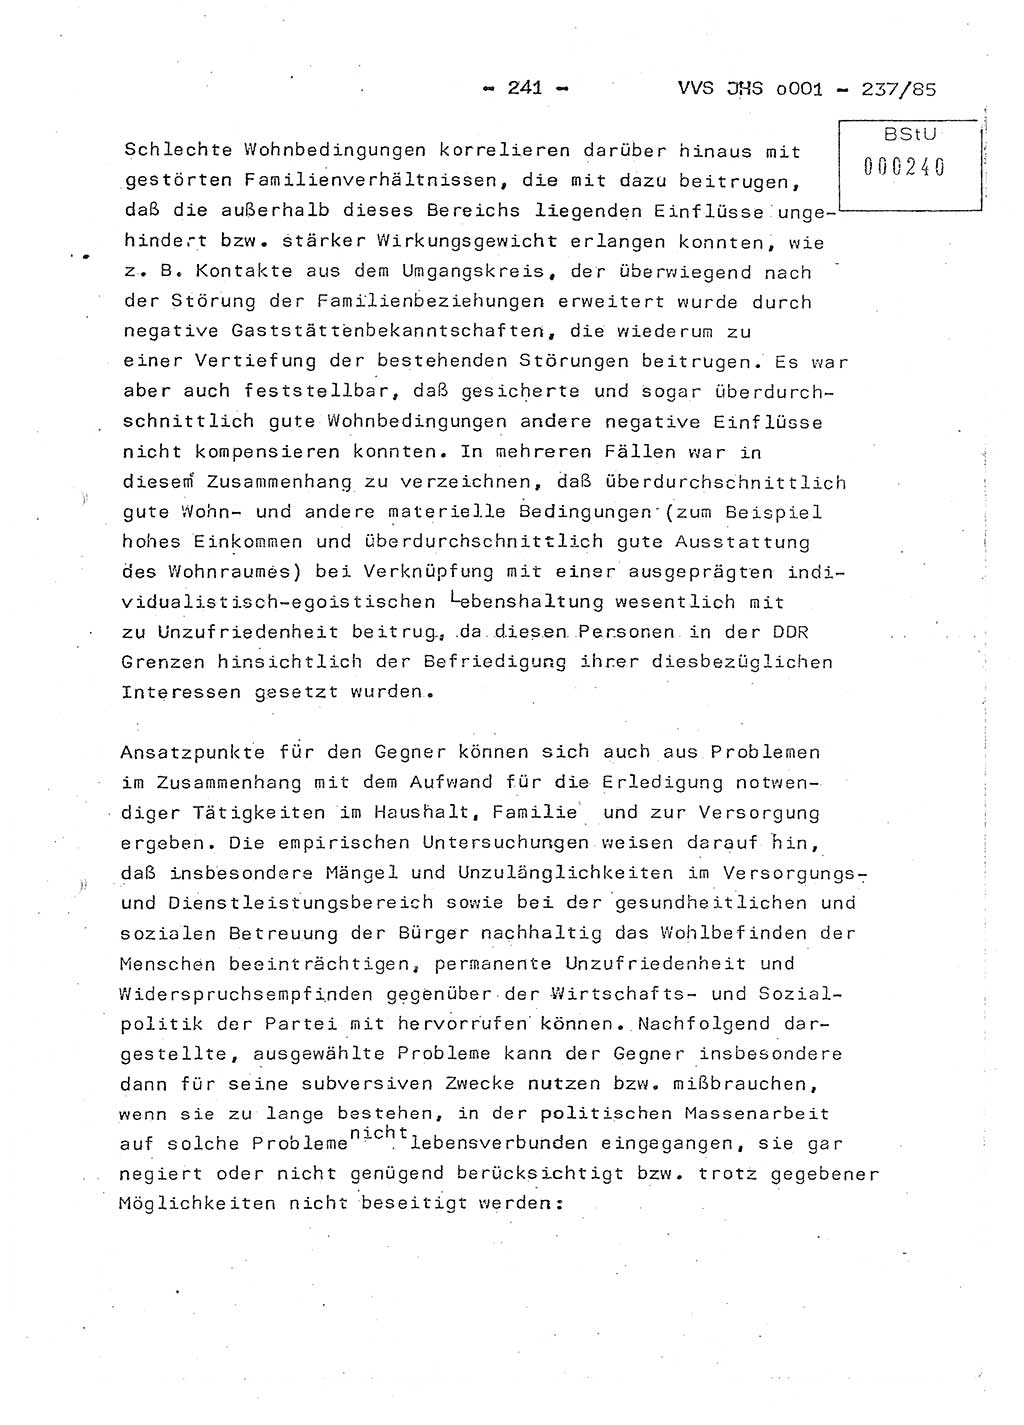 Dissertation Oberstleutnant Peter Jakulski (JHS), Oberstleutnat Christian Rudolph (HA Ⅸ), Major Horst Böttger (ZMD), Major Wolfgang Grüneberg (JHS), Major Albert Meutsch (JHS), Ministerium für Staatssicherheit (MfS) [Deutsche Demokratische Republik (DDR)], Juristische Hochschule (JHS), Vertrauliche Verschlußsache (VVS) o001-237/85, Potsdam 1985, Seite 241 (Diss. MfS DDR JHS VVS o001-237/85 1985, S. 241)